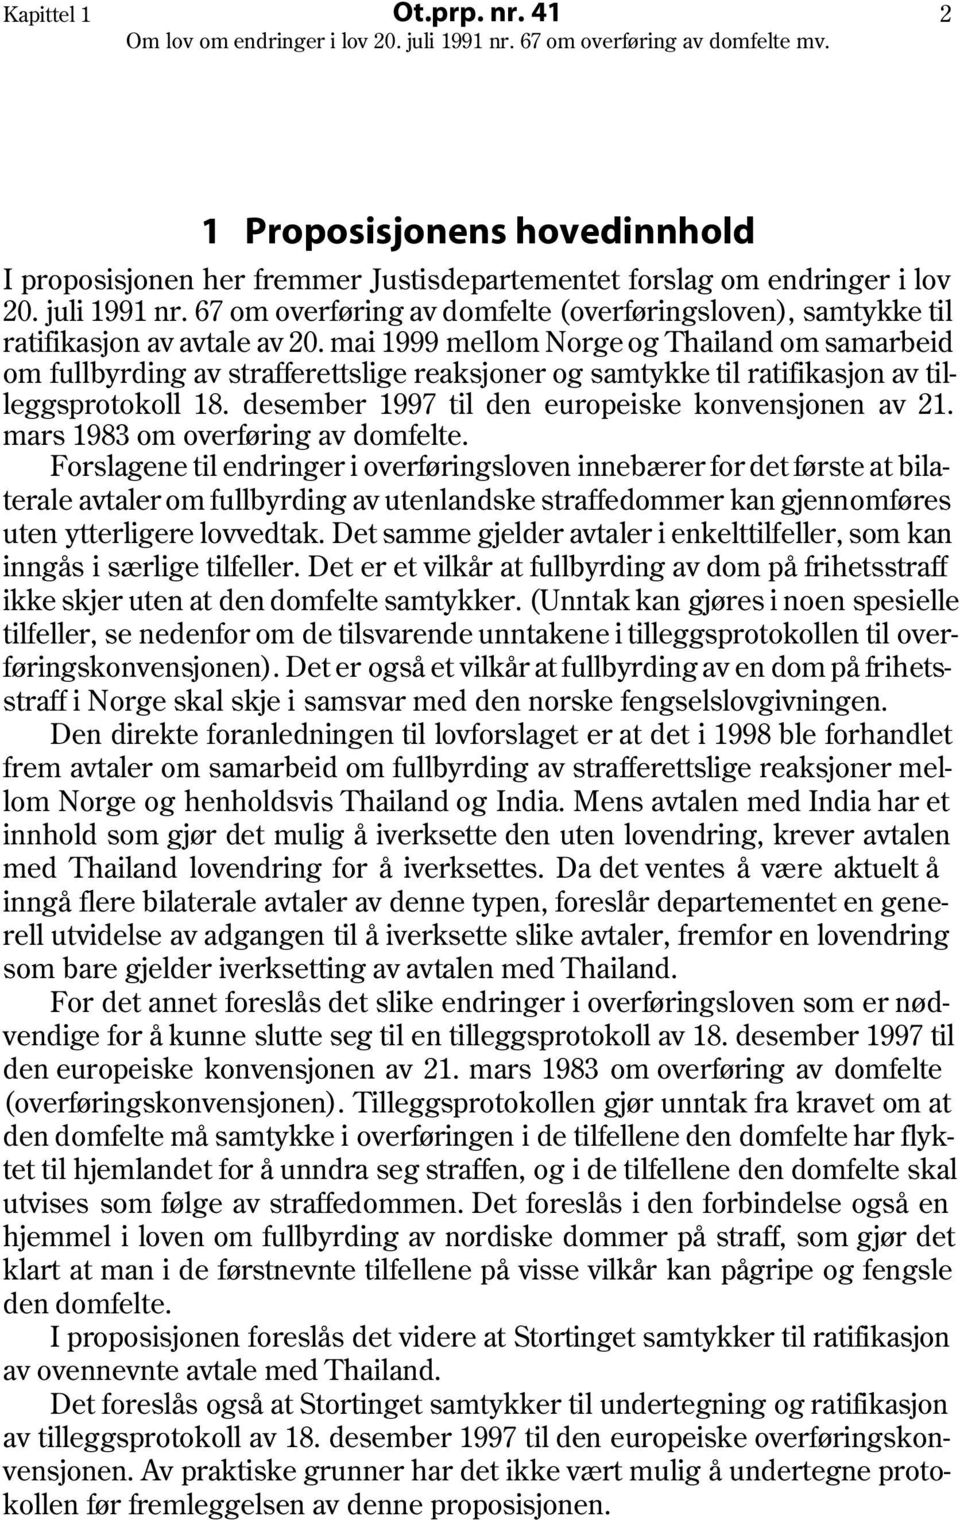 mai 1999 mellom Norge og Thailand om samarbeid om fullbyrding av strafferettslige reaksjoner og samtykke til ratifikasjon av tilleggsprotokoll 18. desember 1997 til den europeiske konvensjonen av 21.